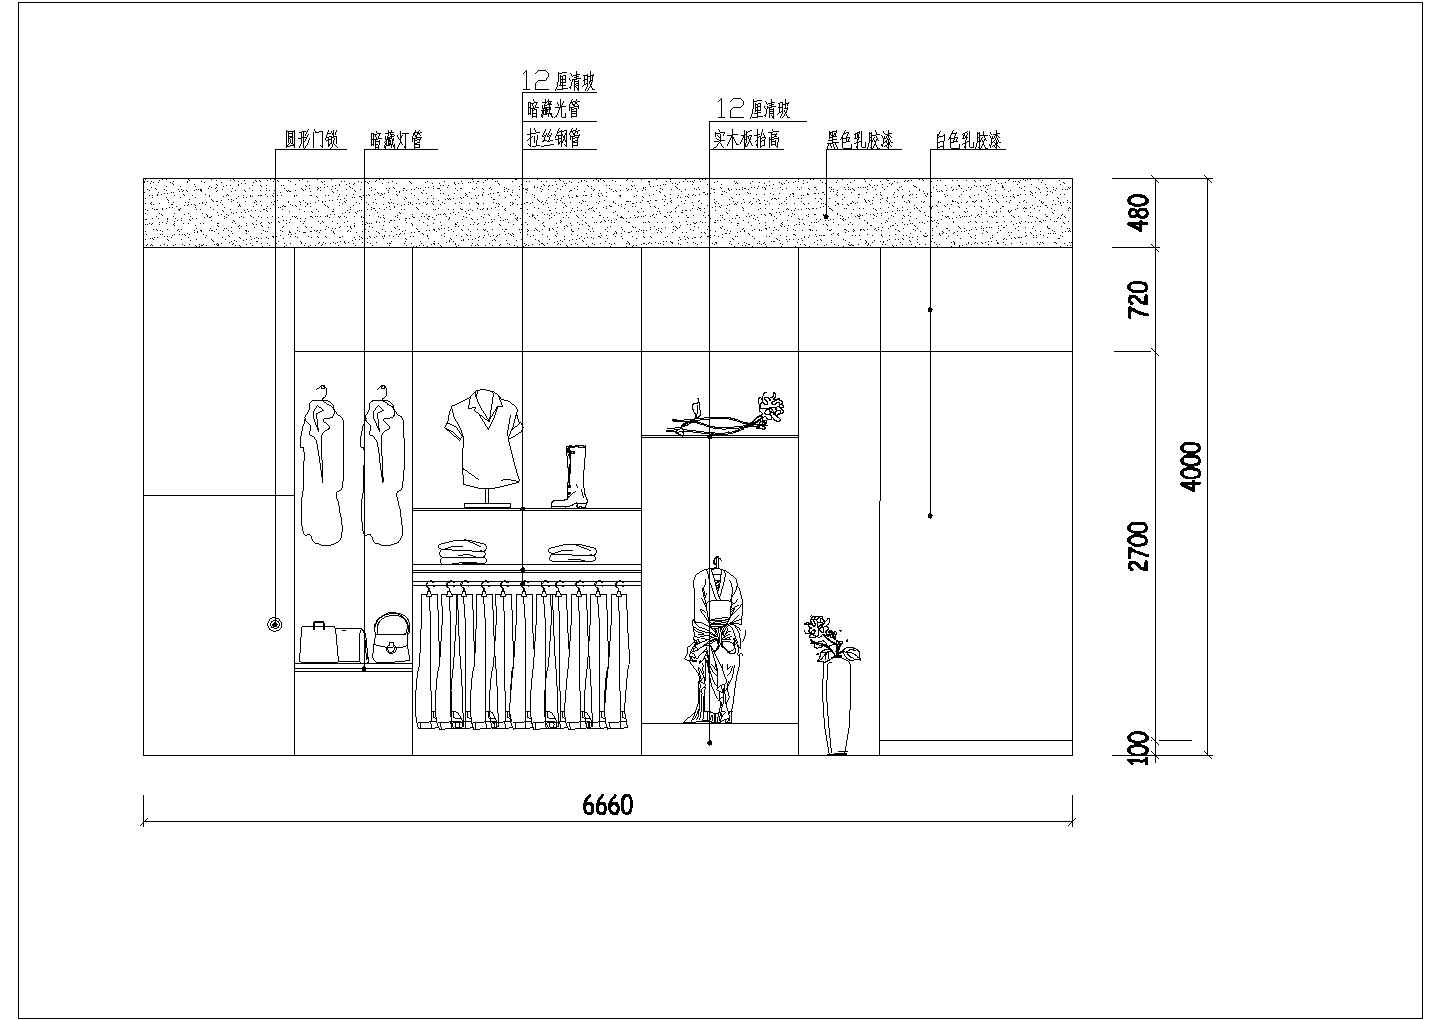 某商场家具专卖商铺装饰详细方案设计施工CAD图纸